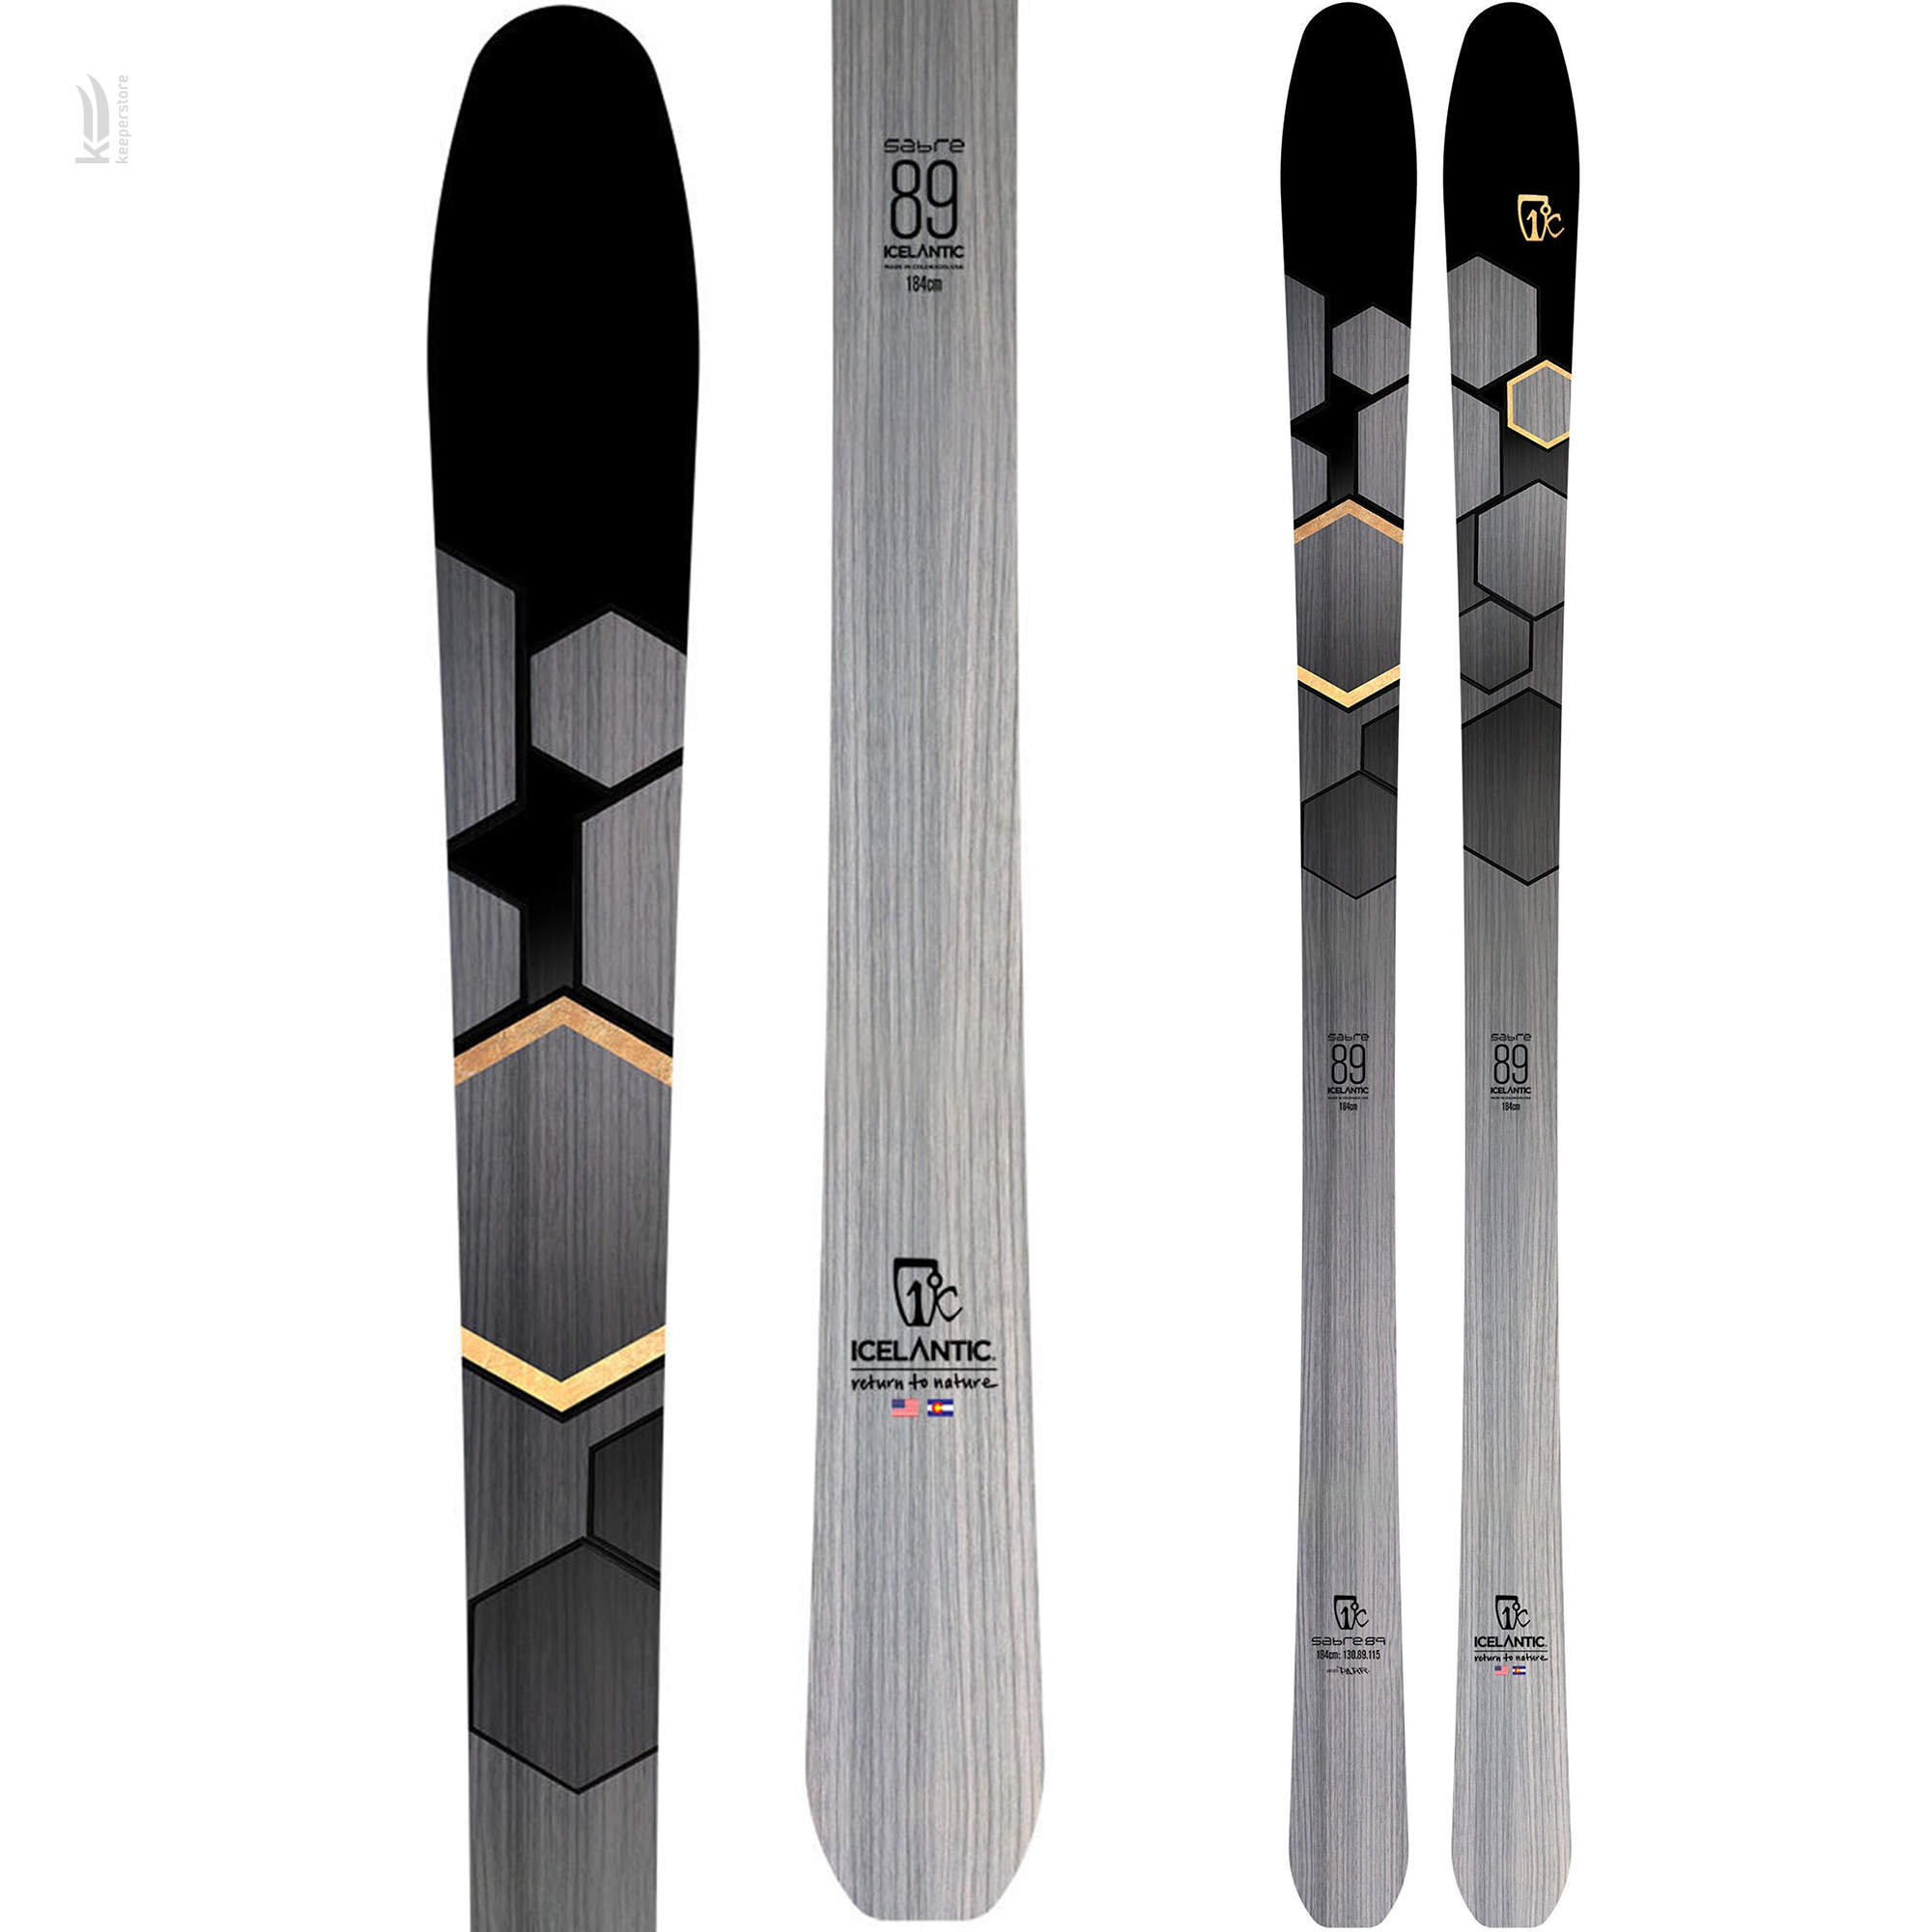 Лыжи для карвинга Icelantic Sabre 89 2019/2020 174cm